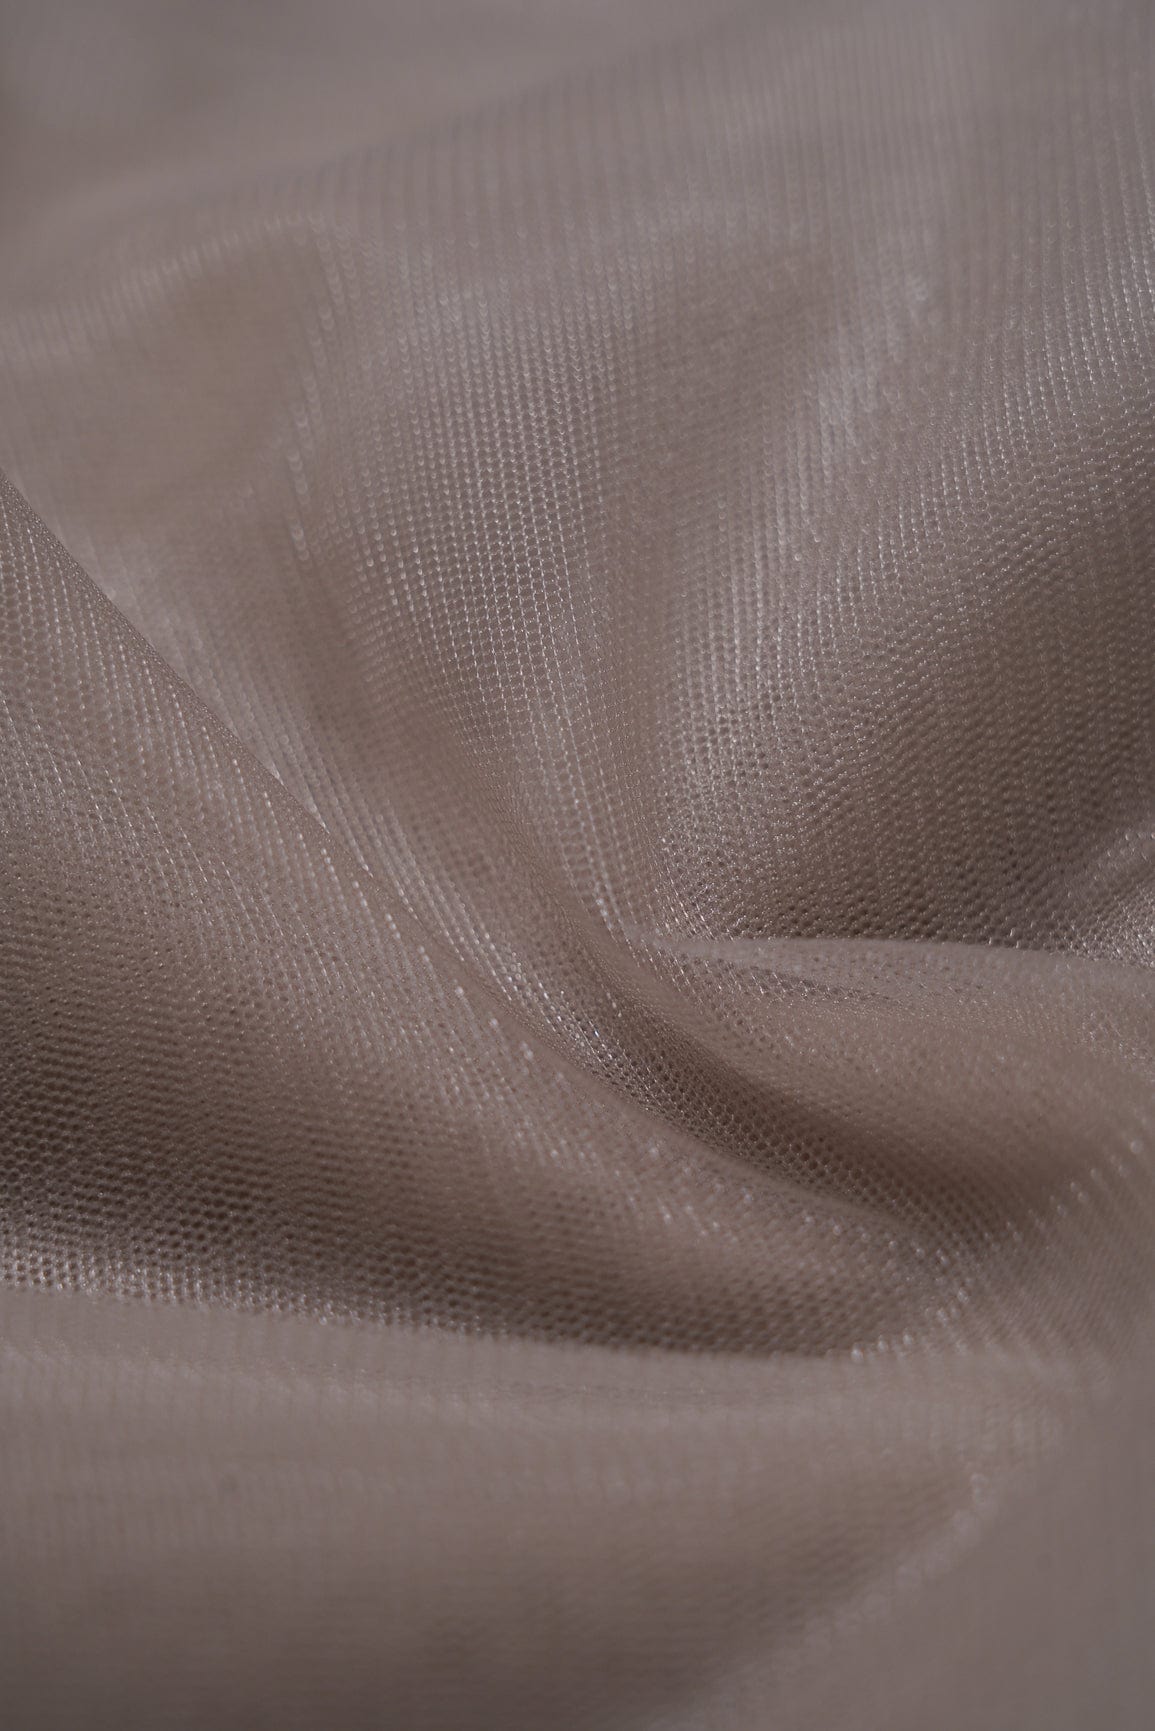 doeraa Plain Fabrics Light Brown Dyed Soft Net